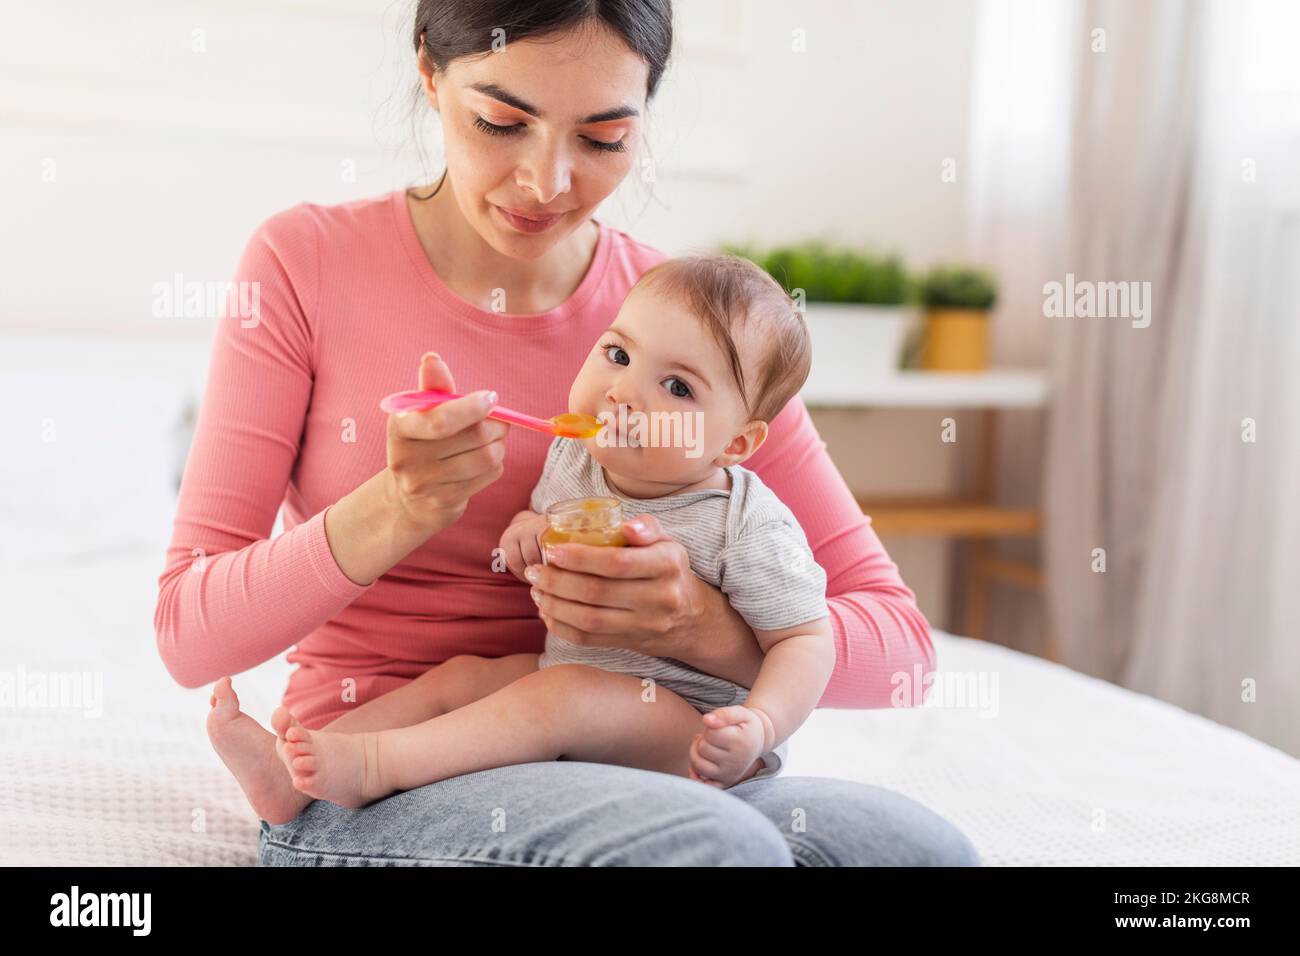 Ein bezauberndes kleines Mädchen, das aus dem Löffel isst, eine junge fürsorgliche Mutter, die ein süßes Baby mit Fruchtpüree füttert Stockfoto